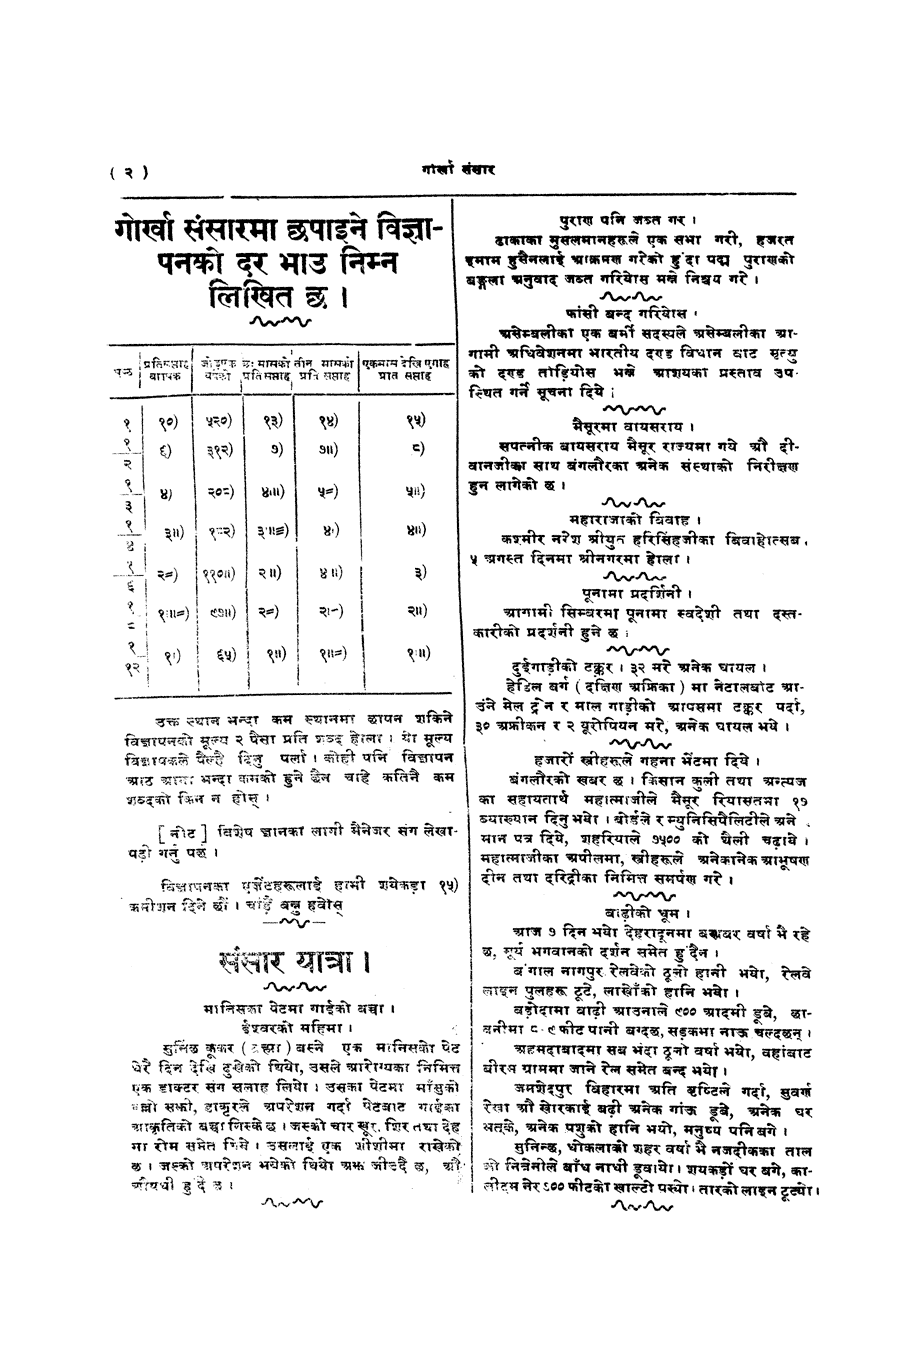 Gorkha Sansar, 9 Aug 1927, page 2